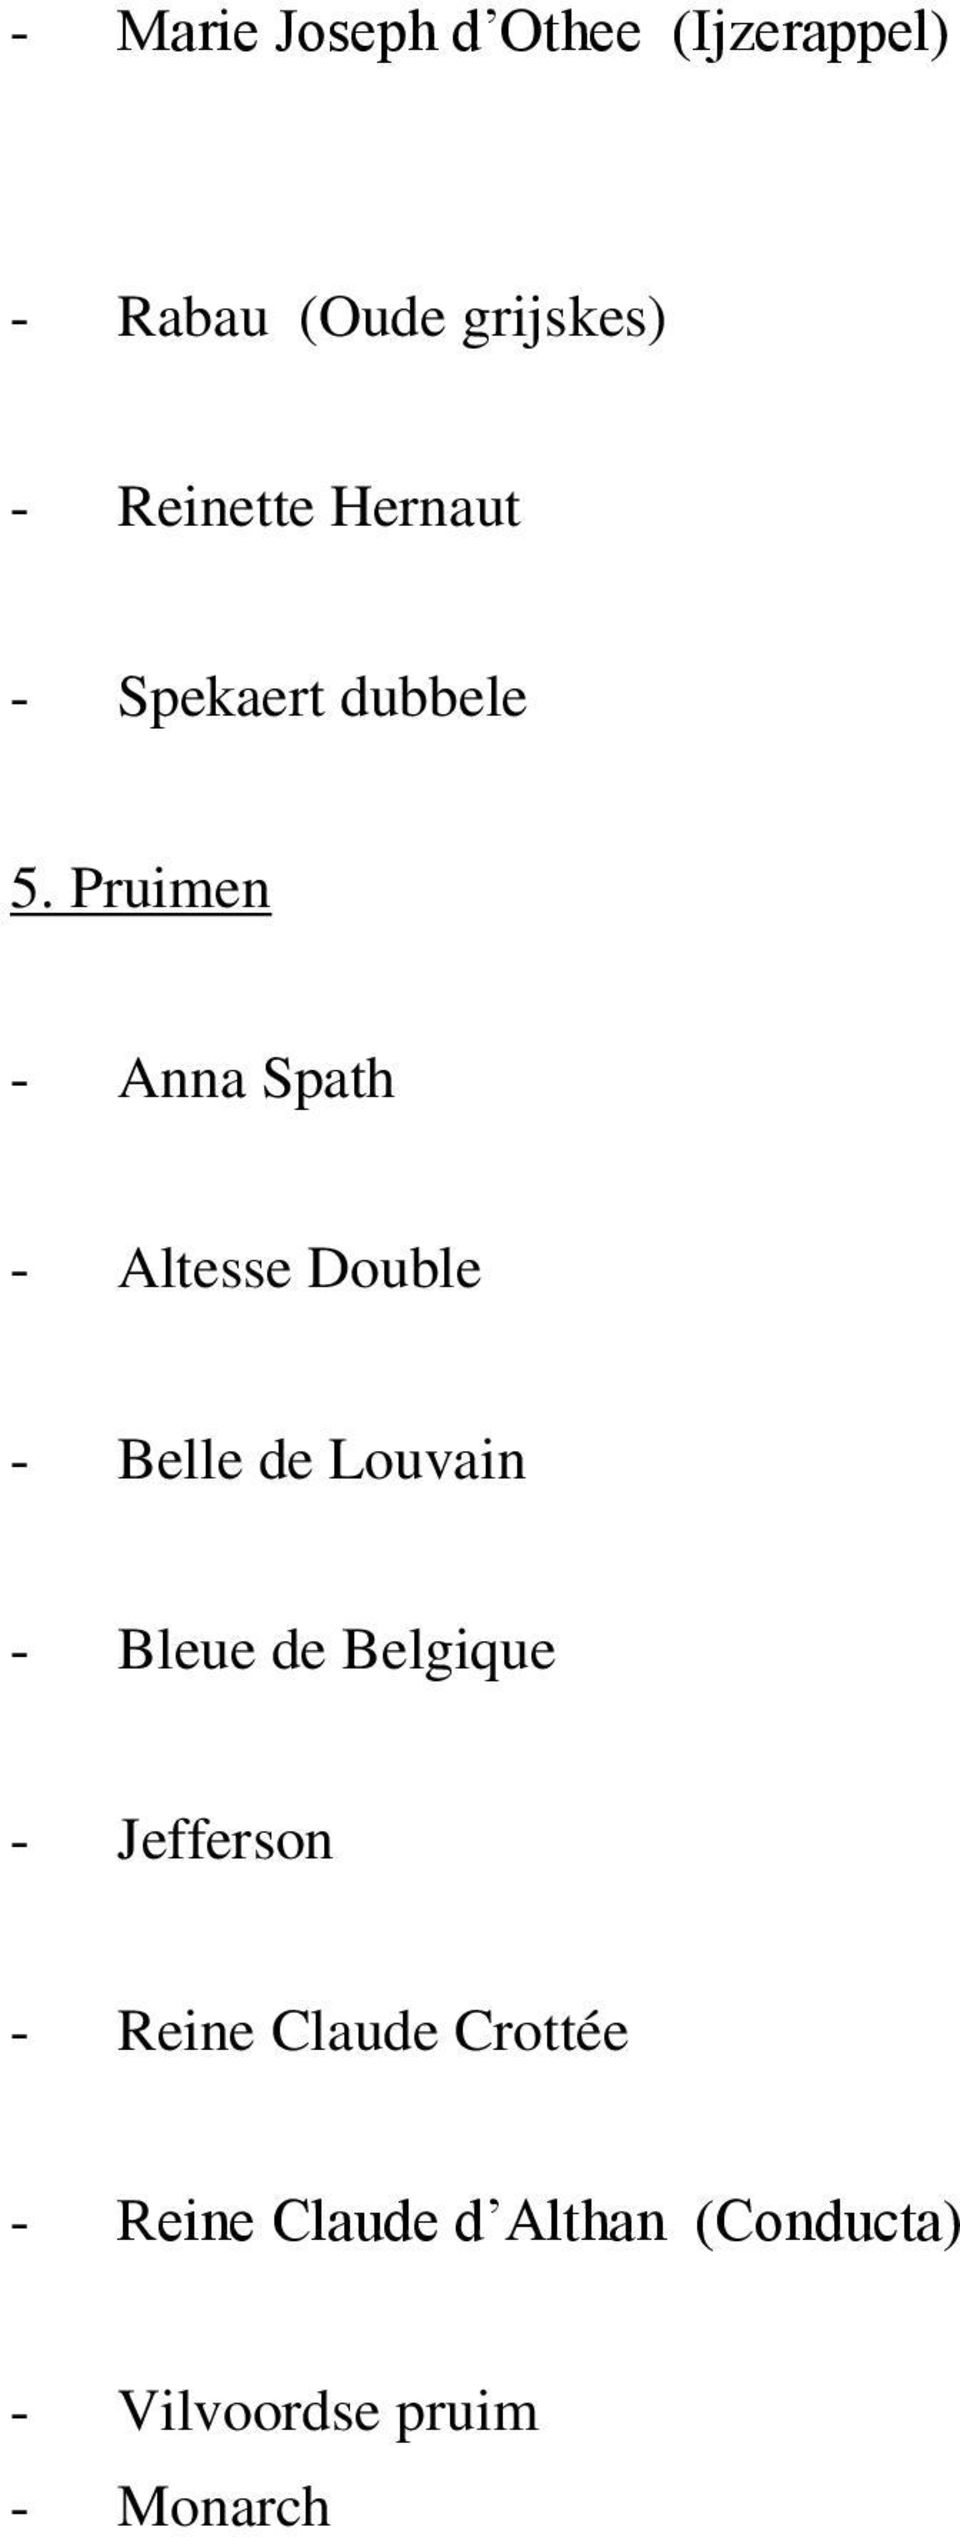 Pruimen - Anna Spath - Altesse Double - Belle de Louvain - Bleue de